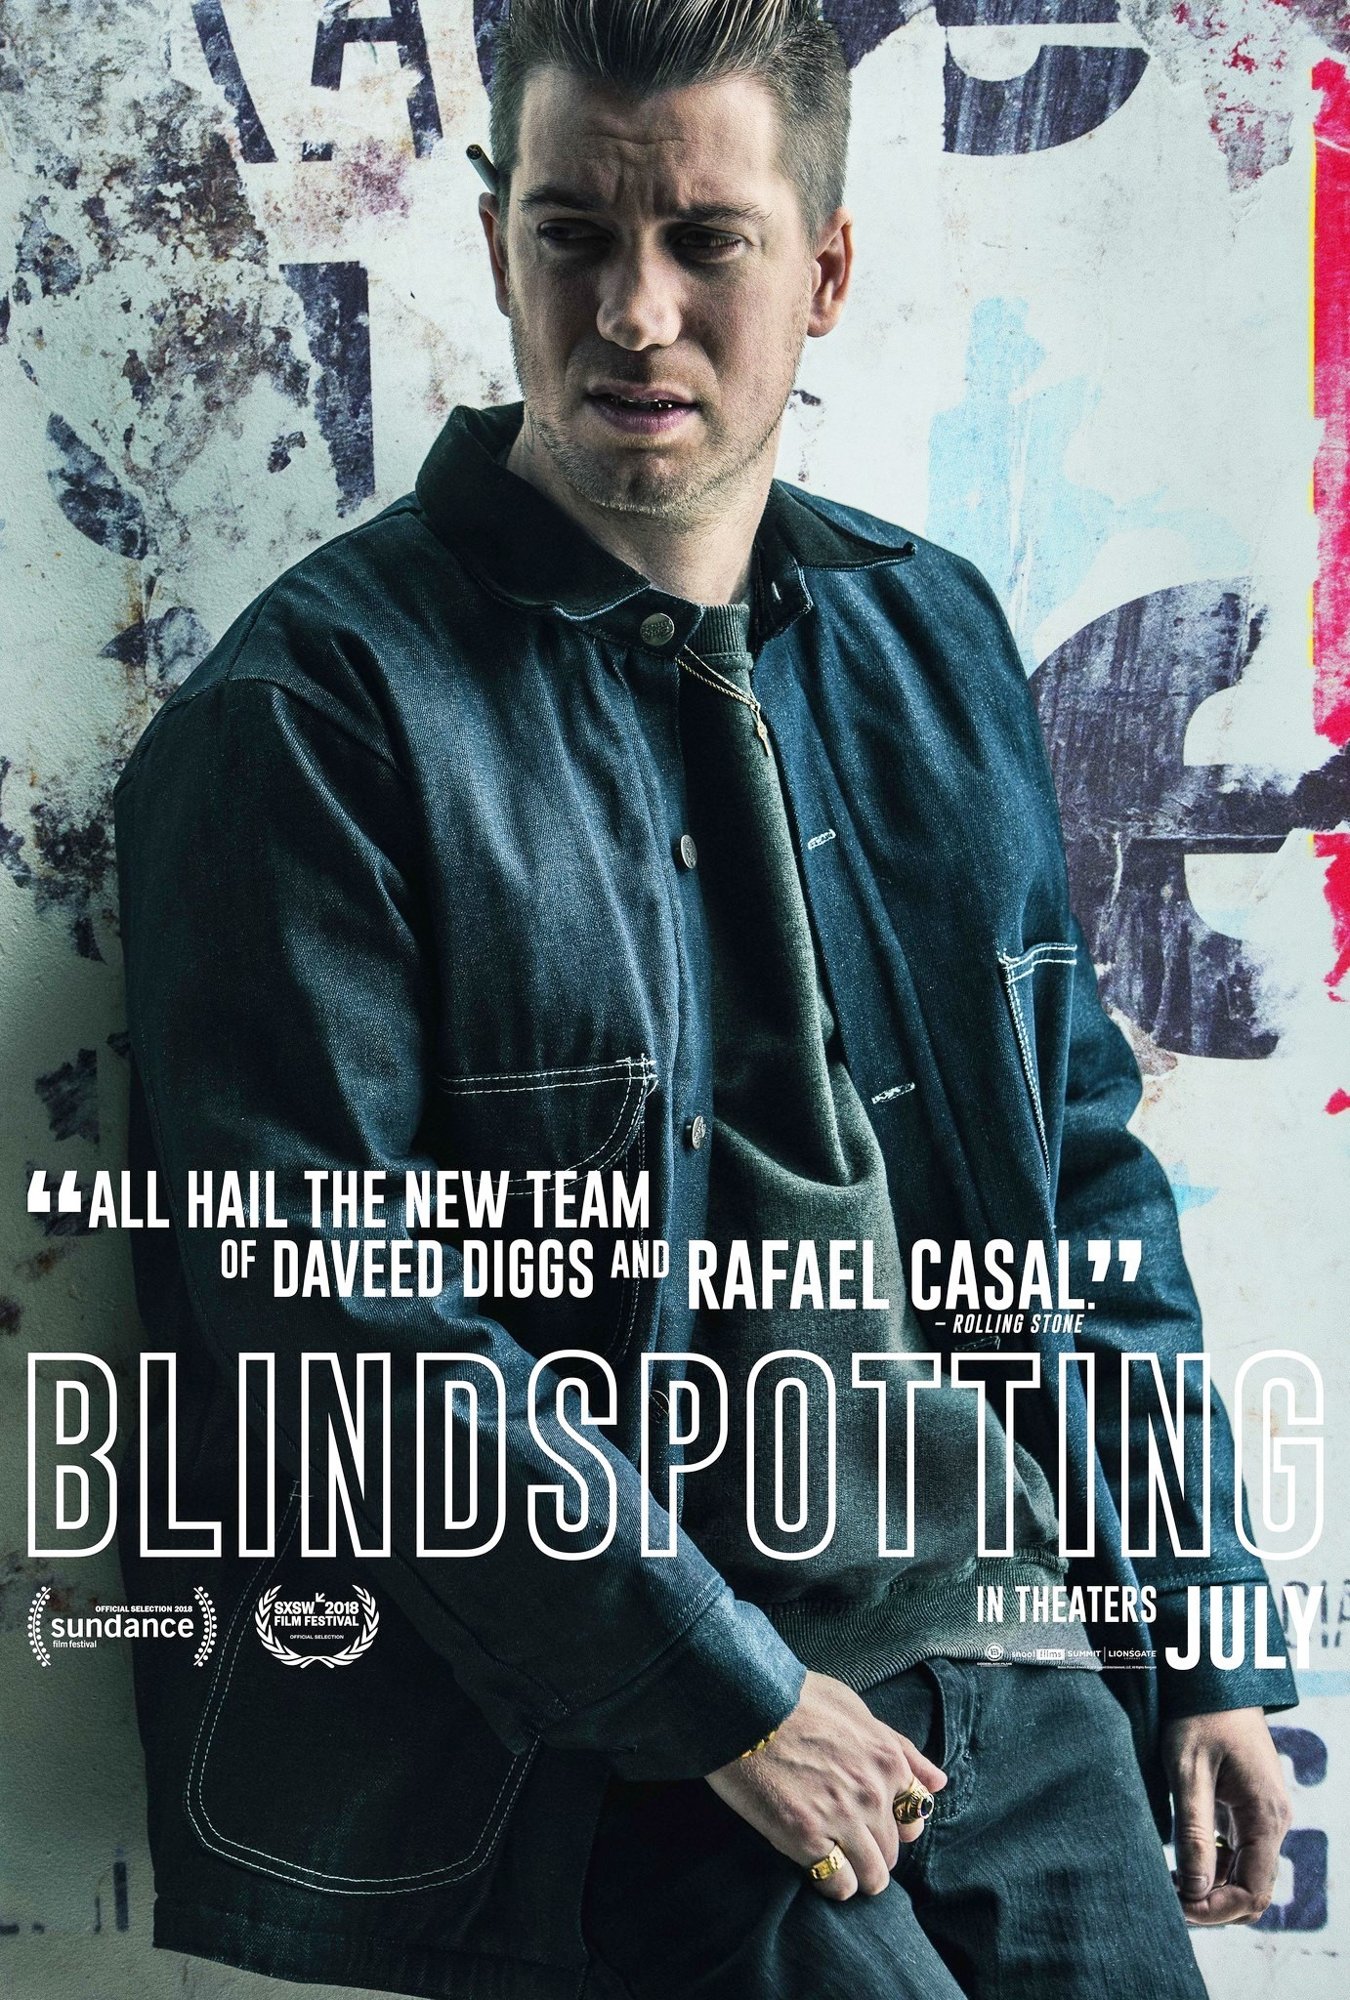 Poster of Lionsgate Films' Blindspotting (2018)